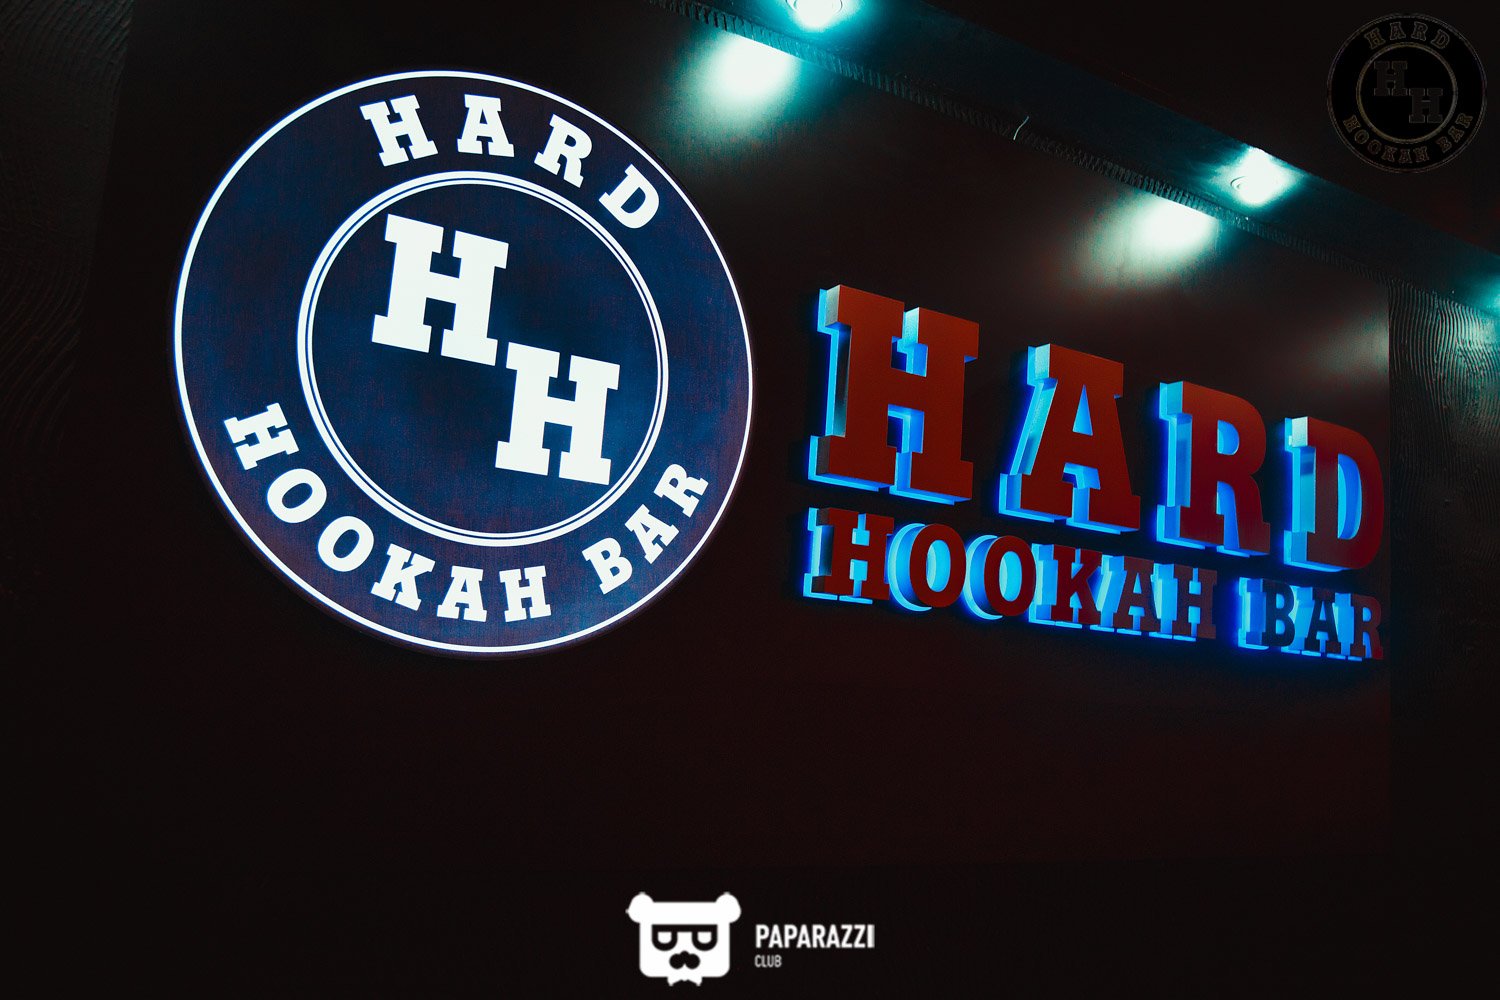 Hard Hookah Bar